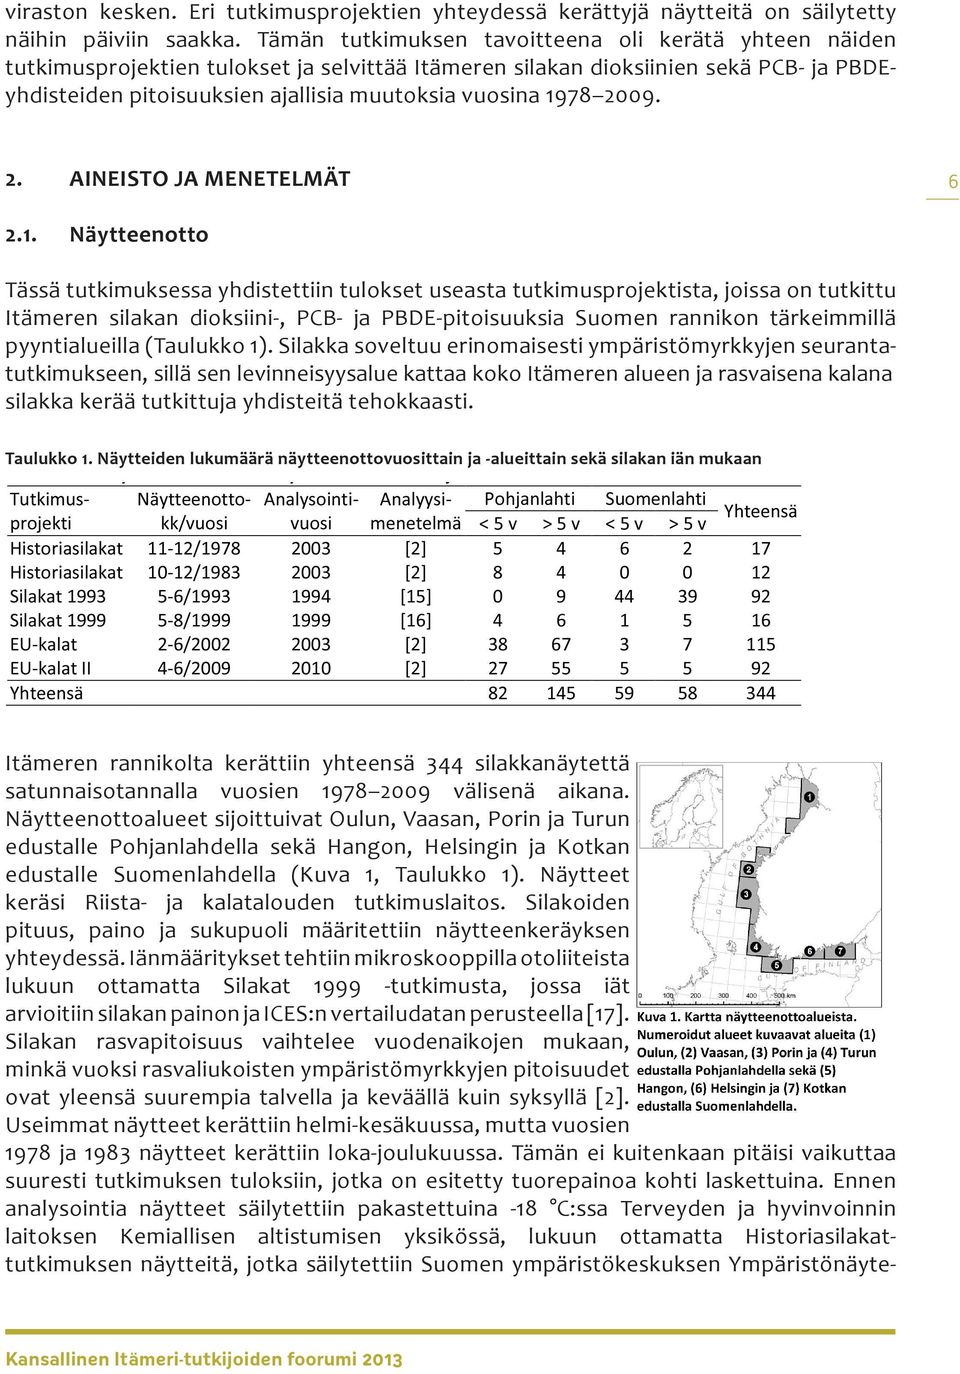 1978 2009. 2. AINEISTO JA MENETELMÄT 6 2.1. Näytteenotto Tässä tutkimuksessa yhdistettiin tulokset useasta tutkimusprojektista, joissa on tutkittu Itämeren silakan dioksiini-, PCB- ja